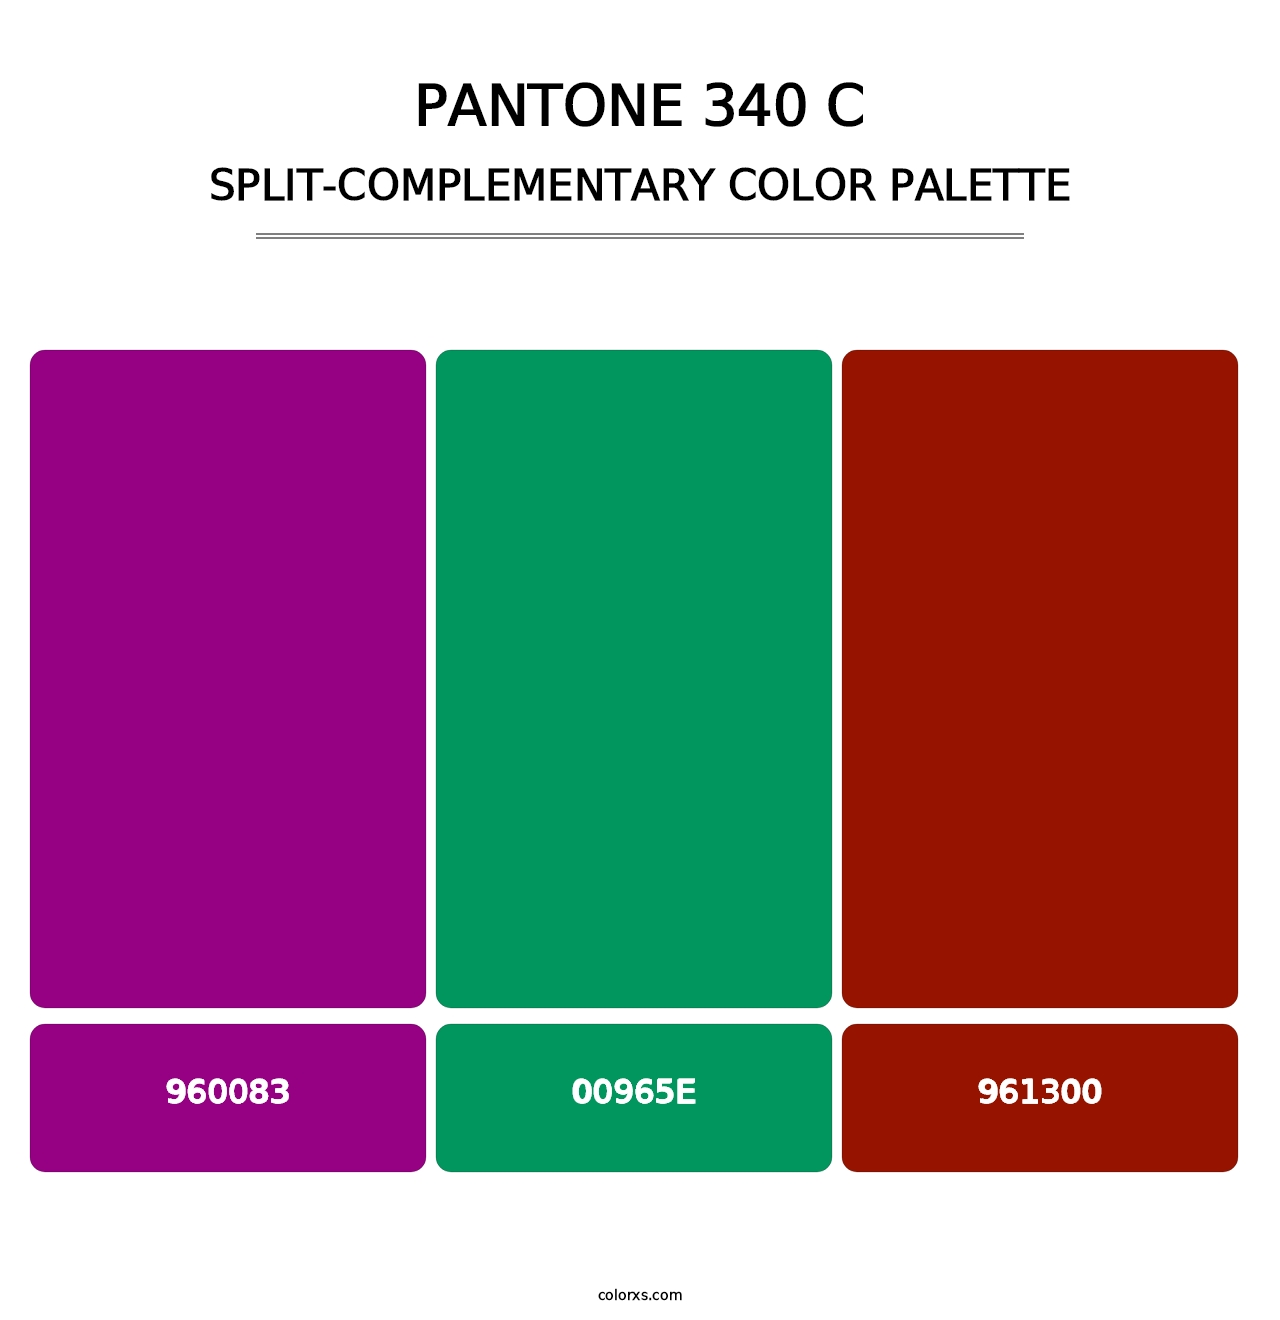 PANTONE 340 C - Split-Complementary Color Palette